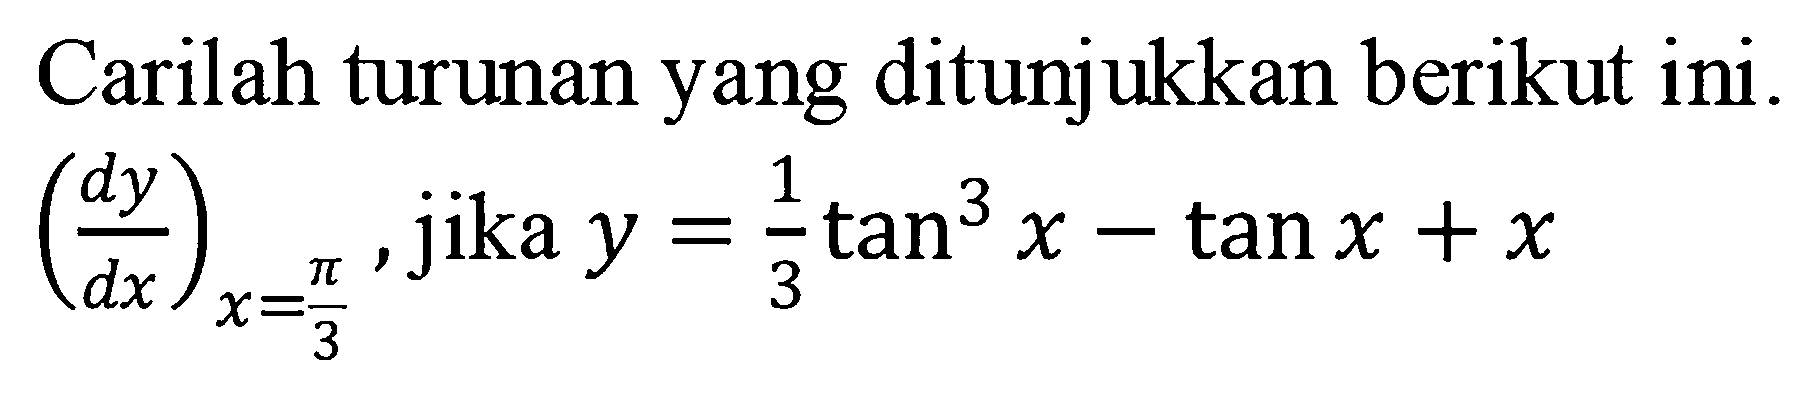 Carilah turunan yang ditunjukkan berikut ini. (dy/dx)x=pi/3, jika y=1/3tan^3 x-tan x + x